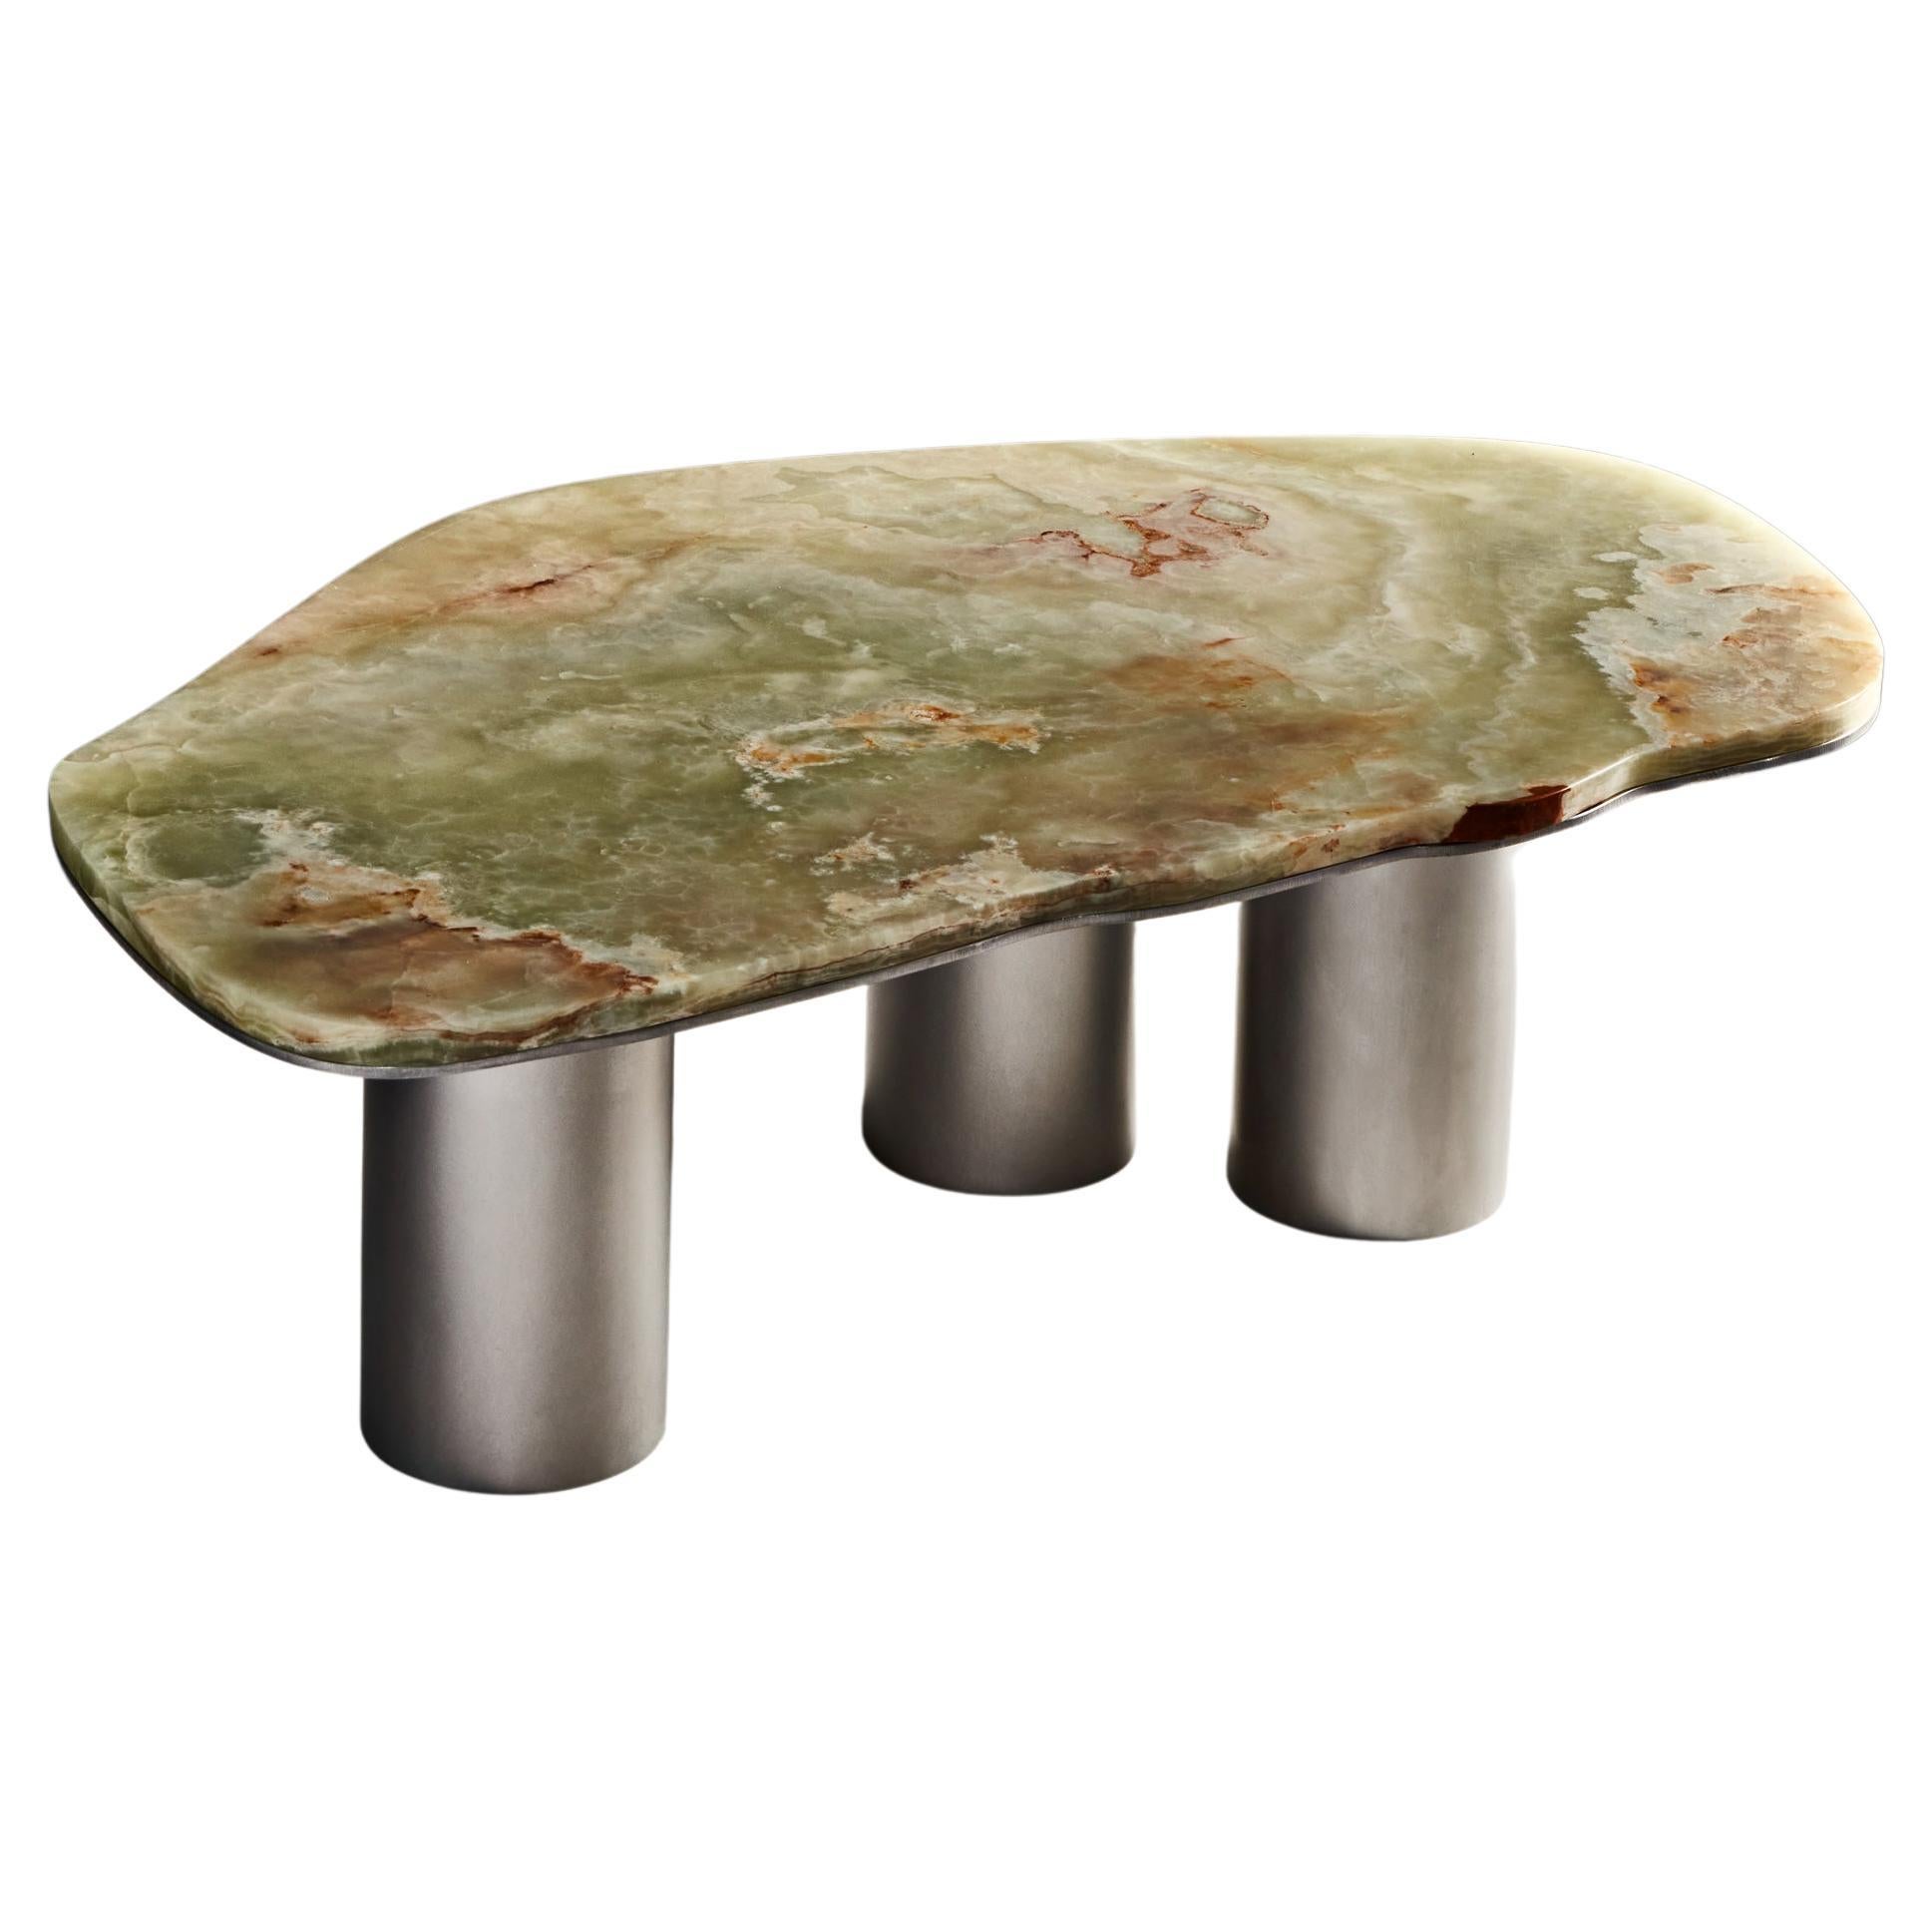 Table basse vert avec base en aluminium brossé ou en laiton